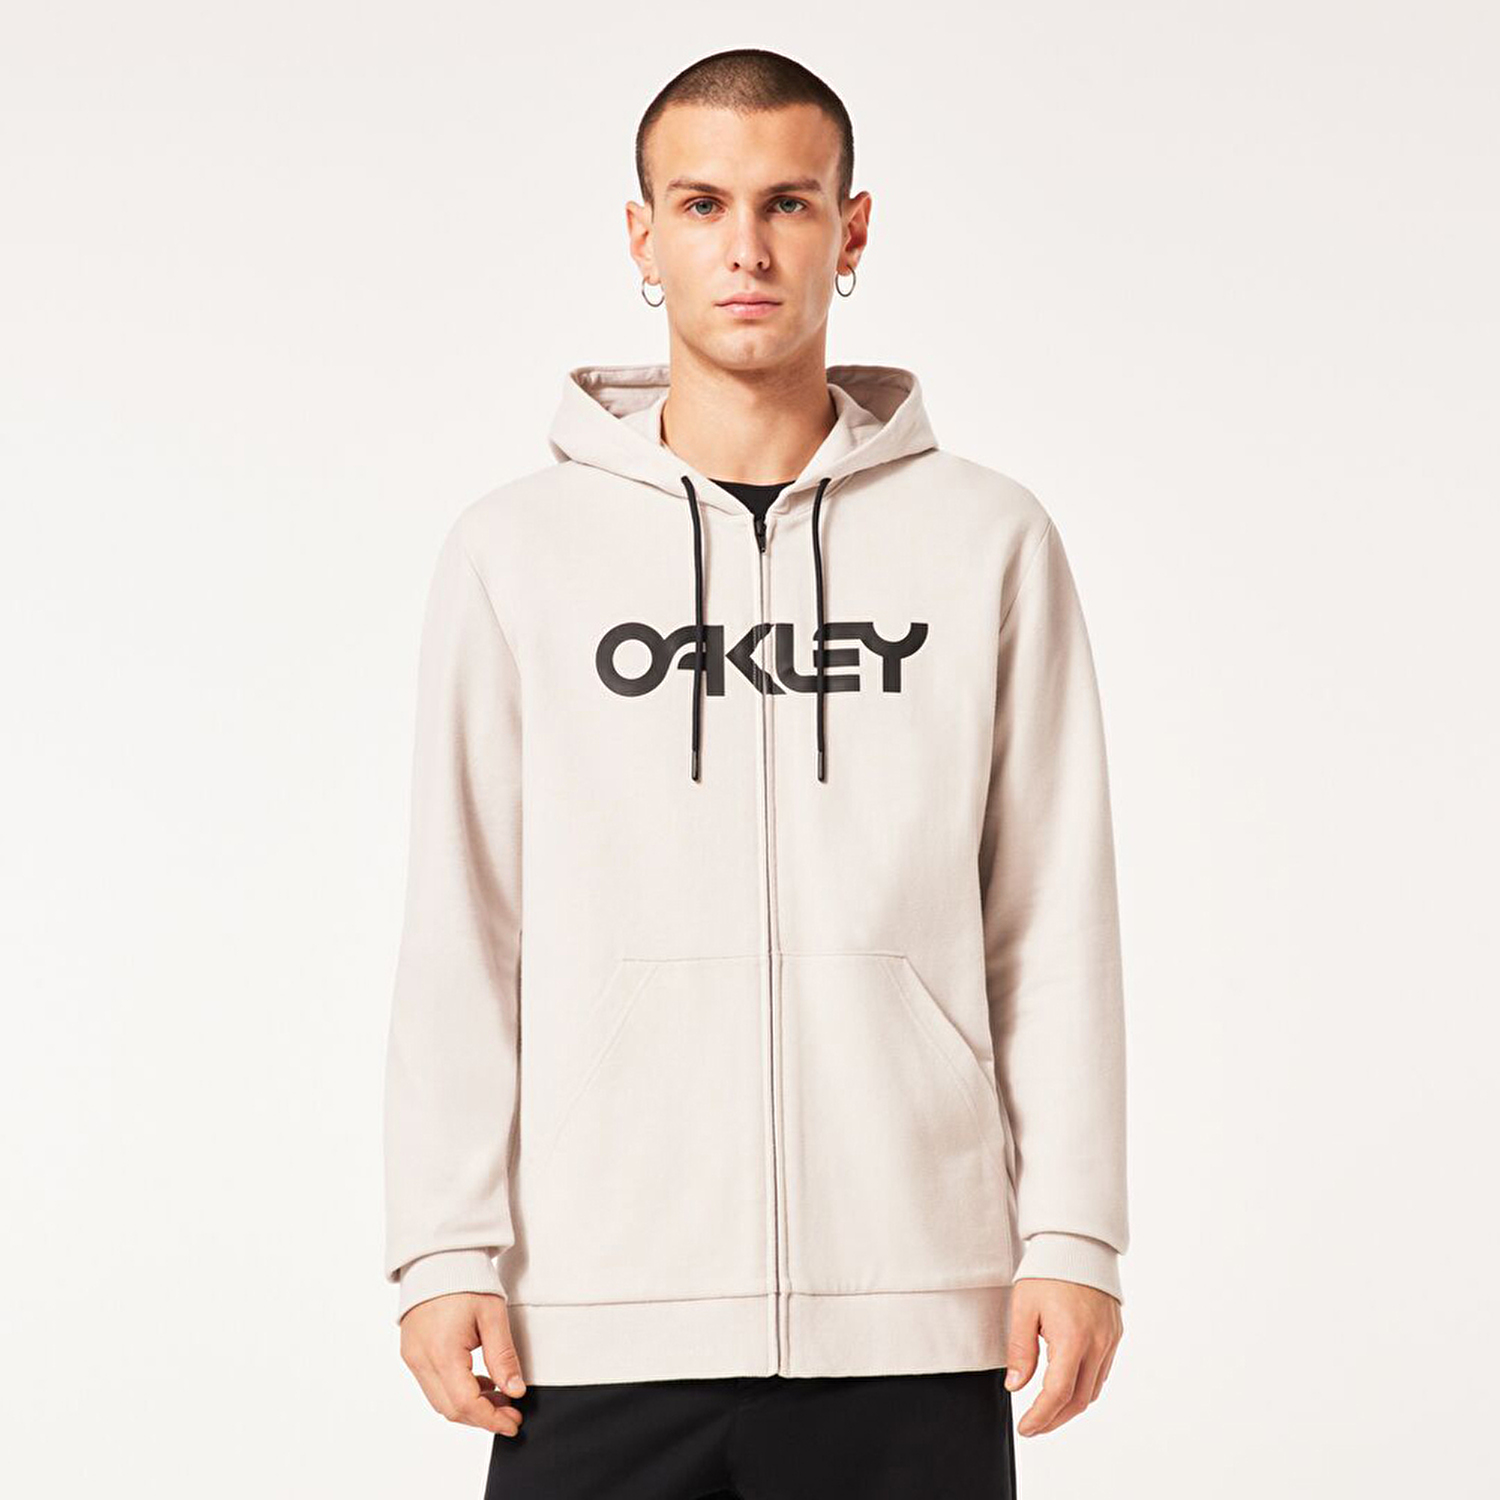 Oakley Teddy Full Zip Unisex Kapüşonlu Sweatshirt